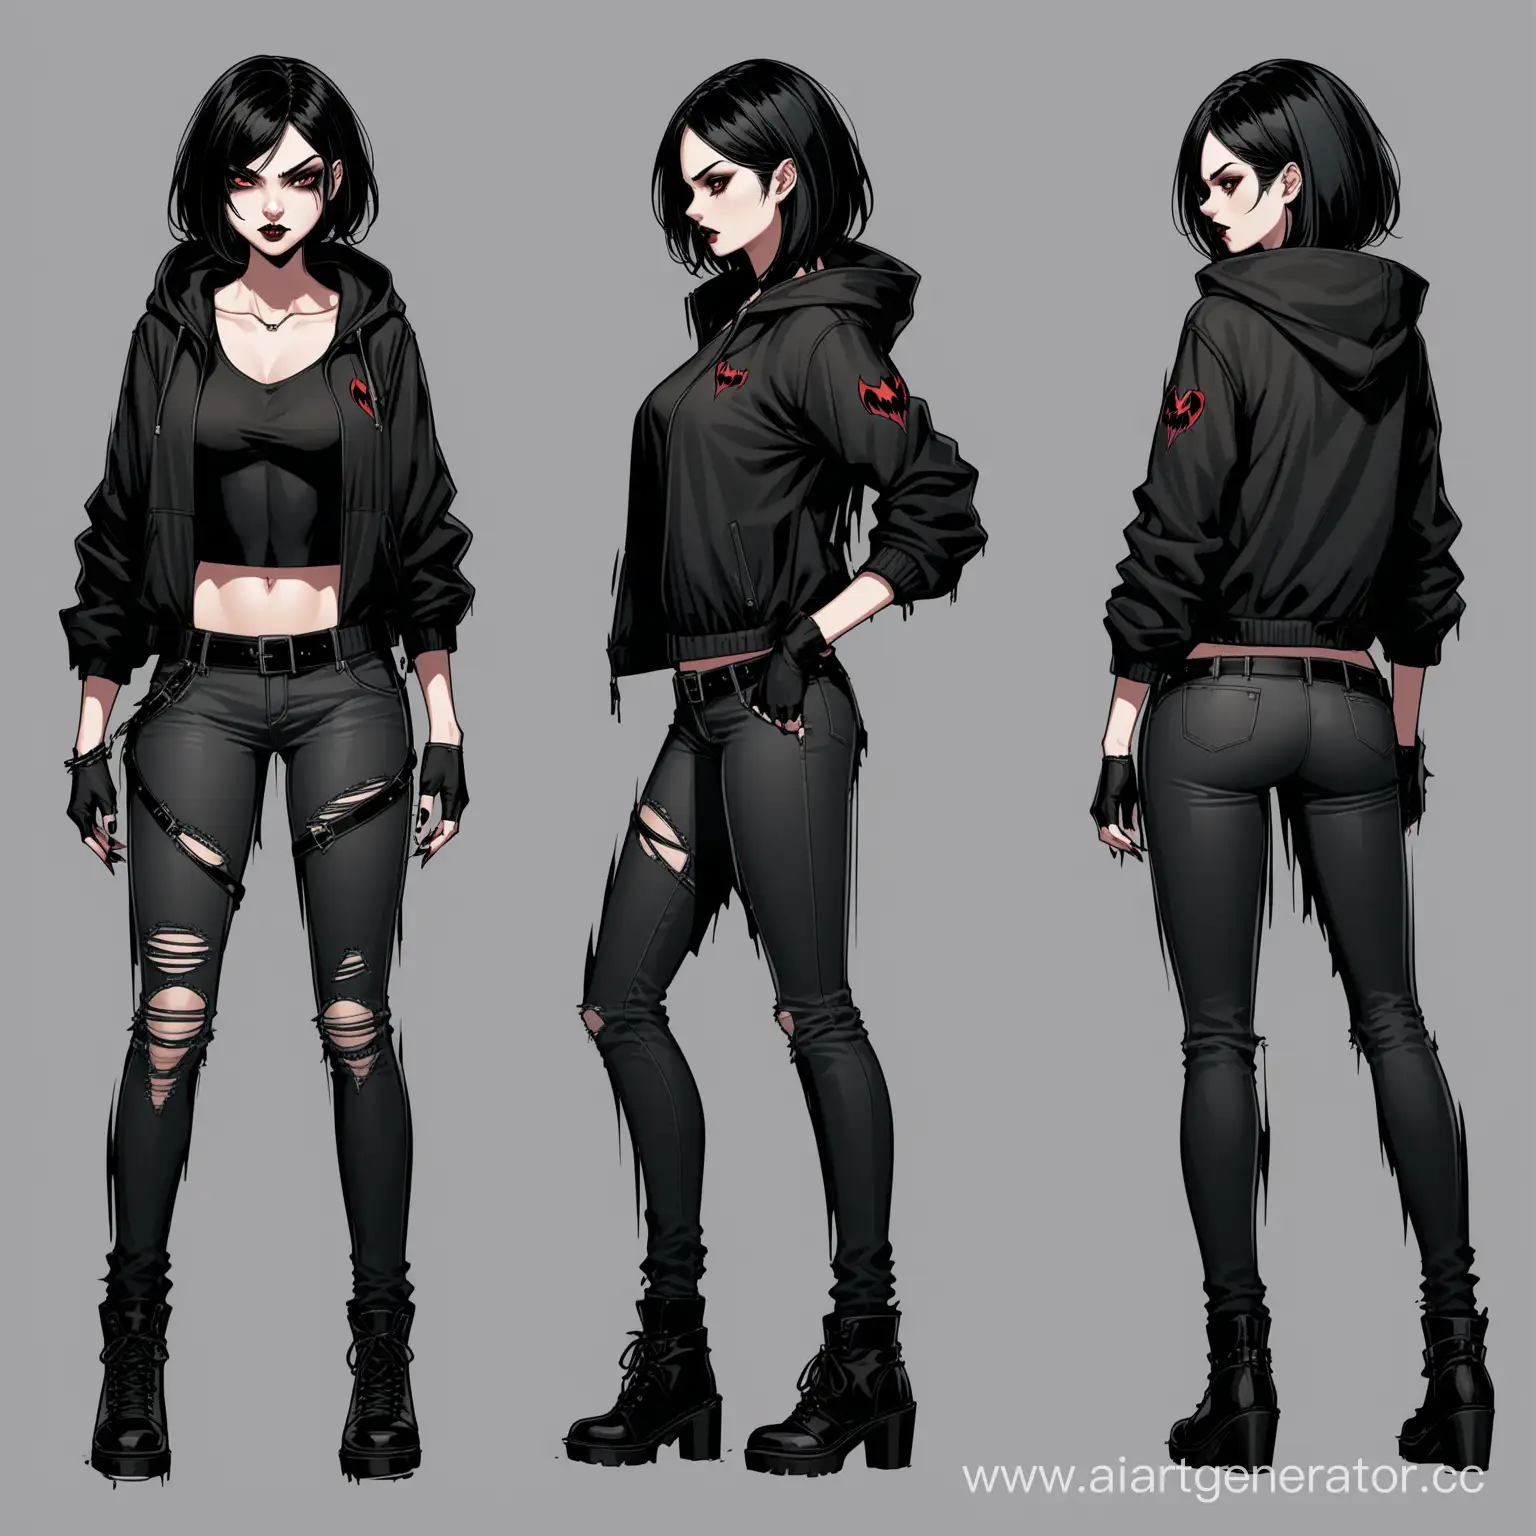 Stylish-Vampiress-Reference-Sheet-Modern-Fashion-Inspiration